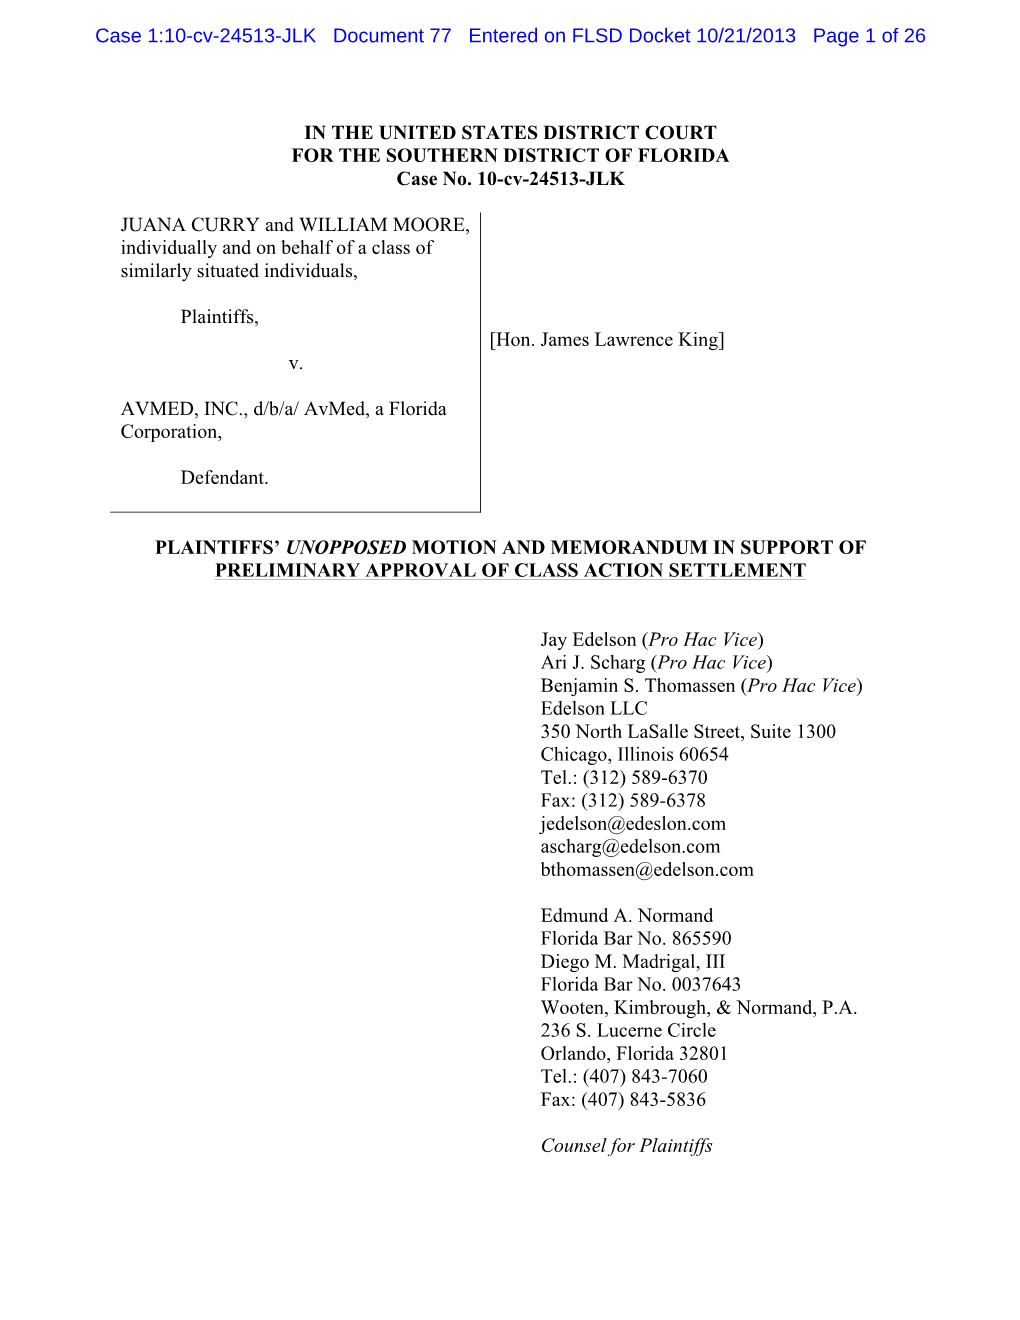 Case 1:10-Cv-24513-JLK Document 77 Entered on FLSD Docket 10/21/2013 Page 1 of 26